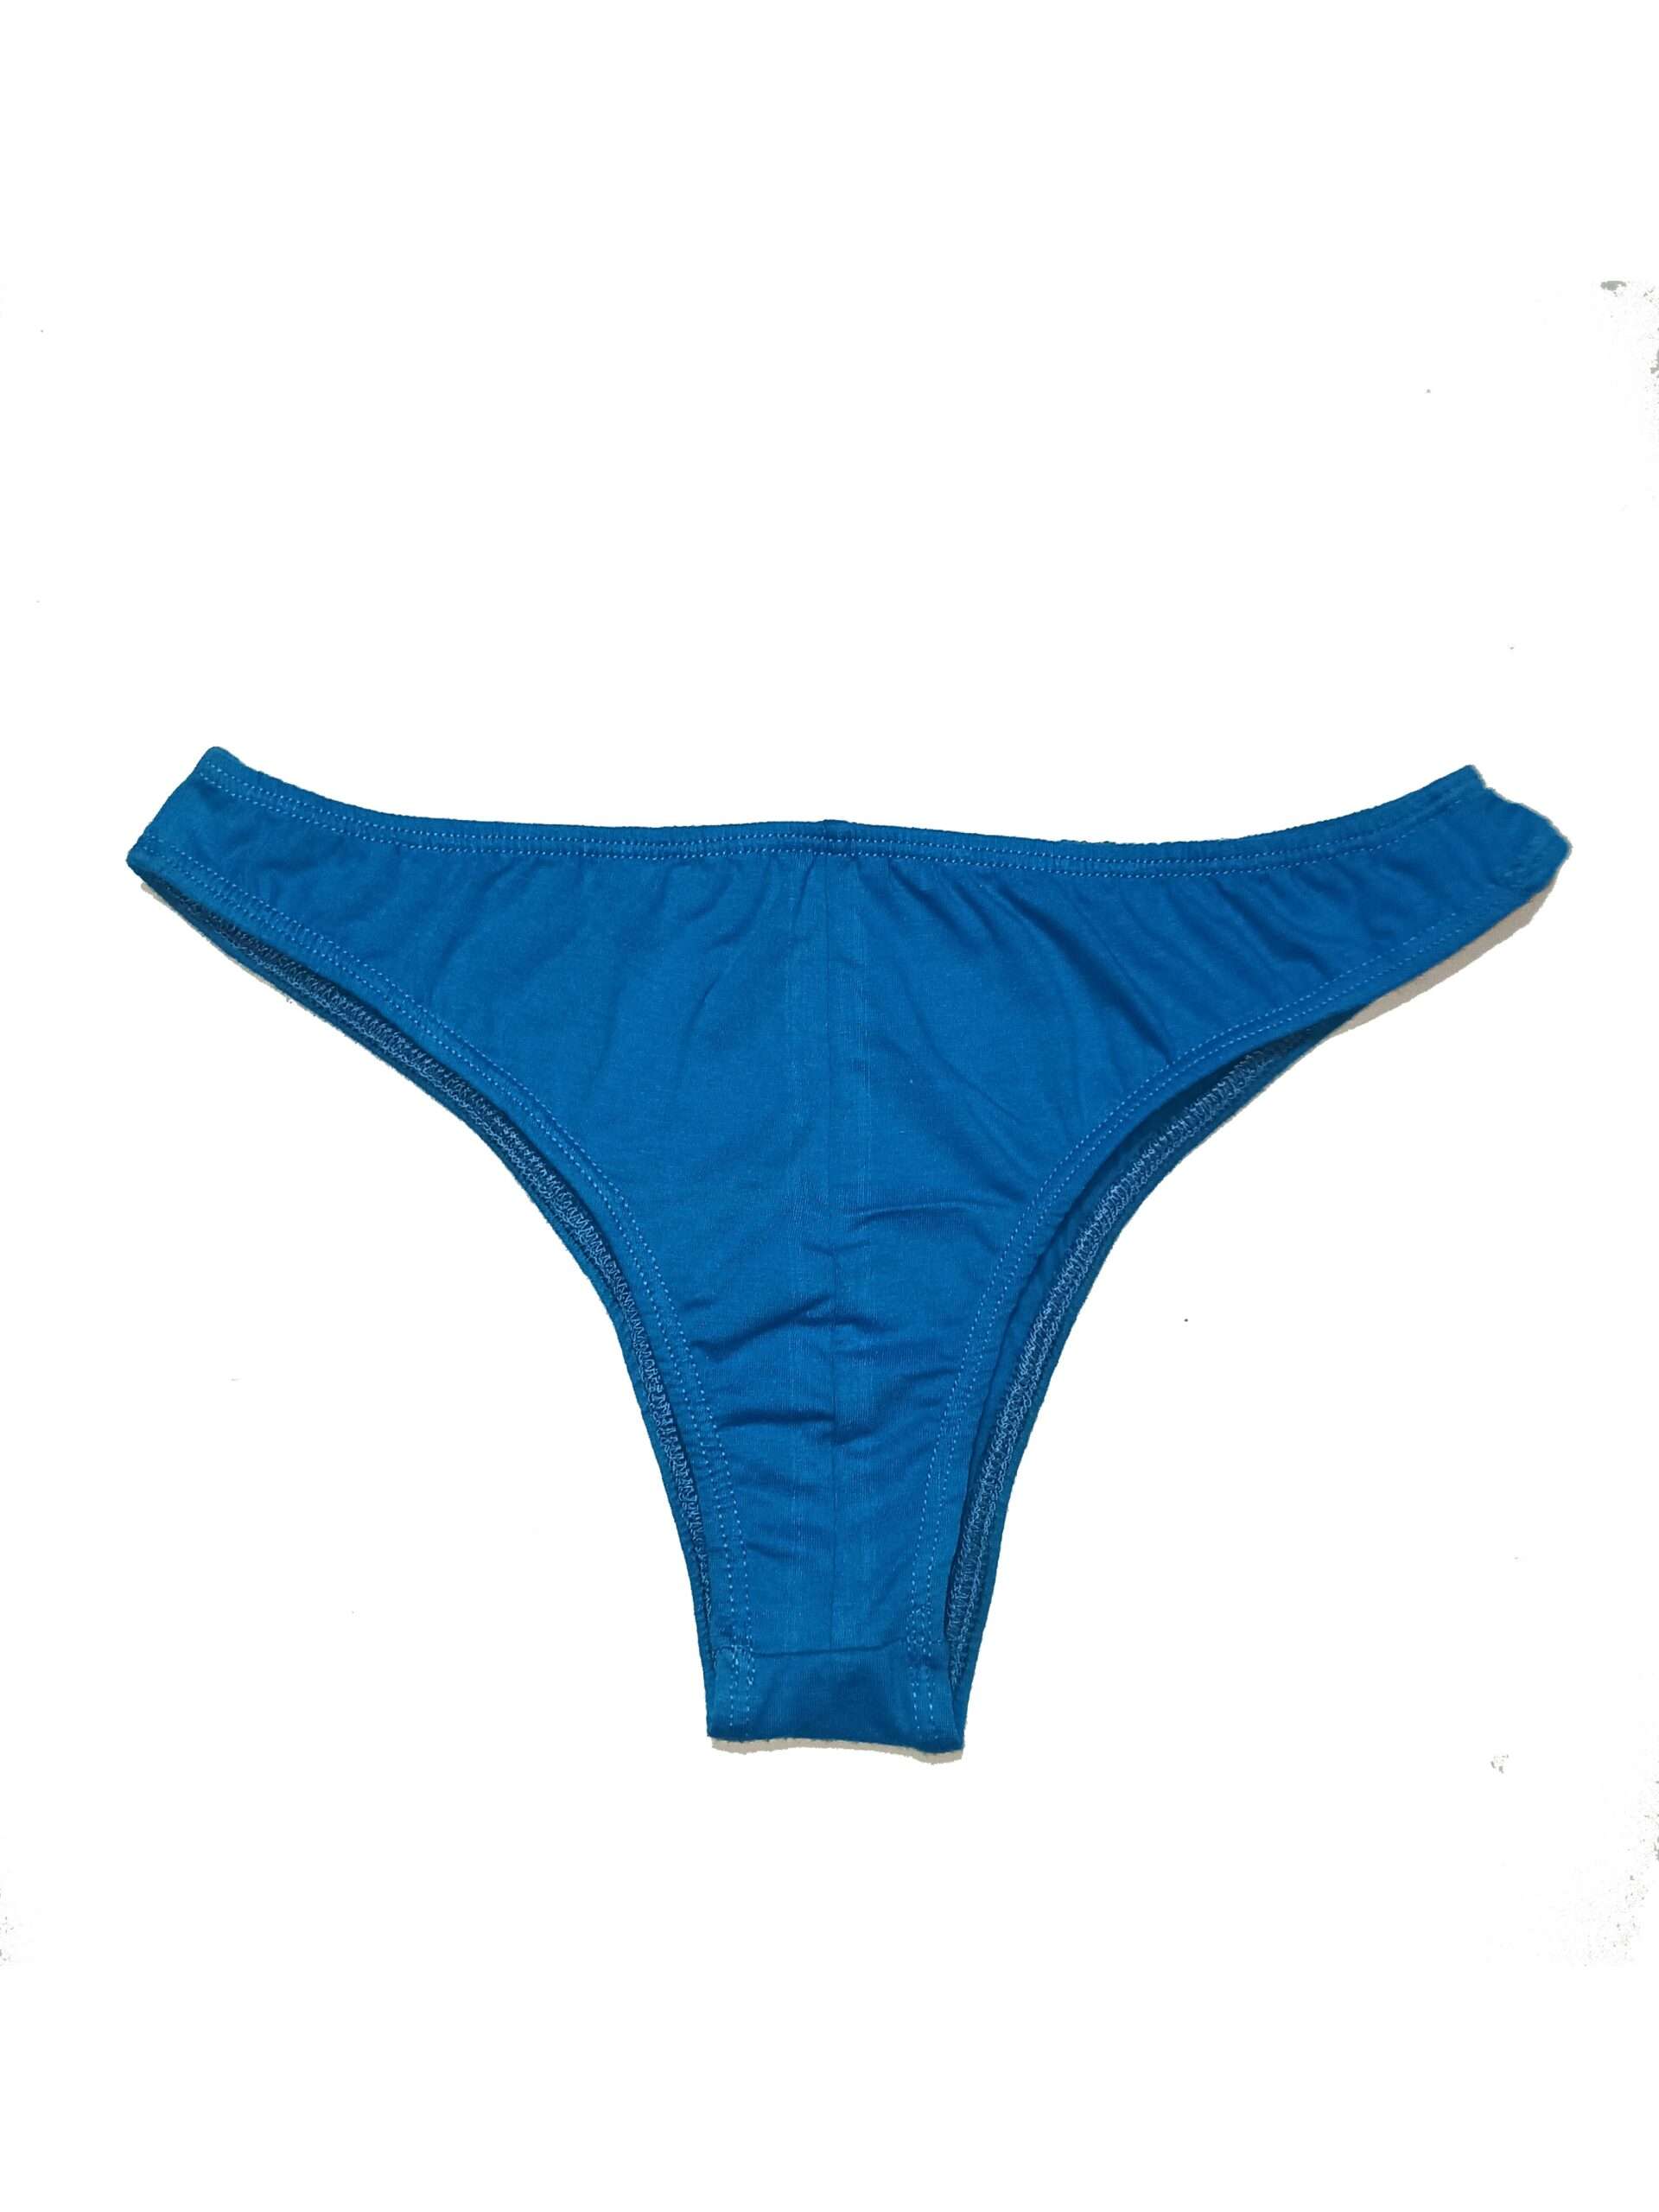 Lady's Silk Spandex Low Rise String Bikini Panties Tanga SN028